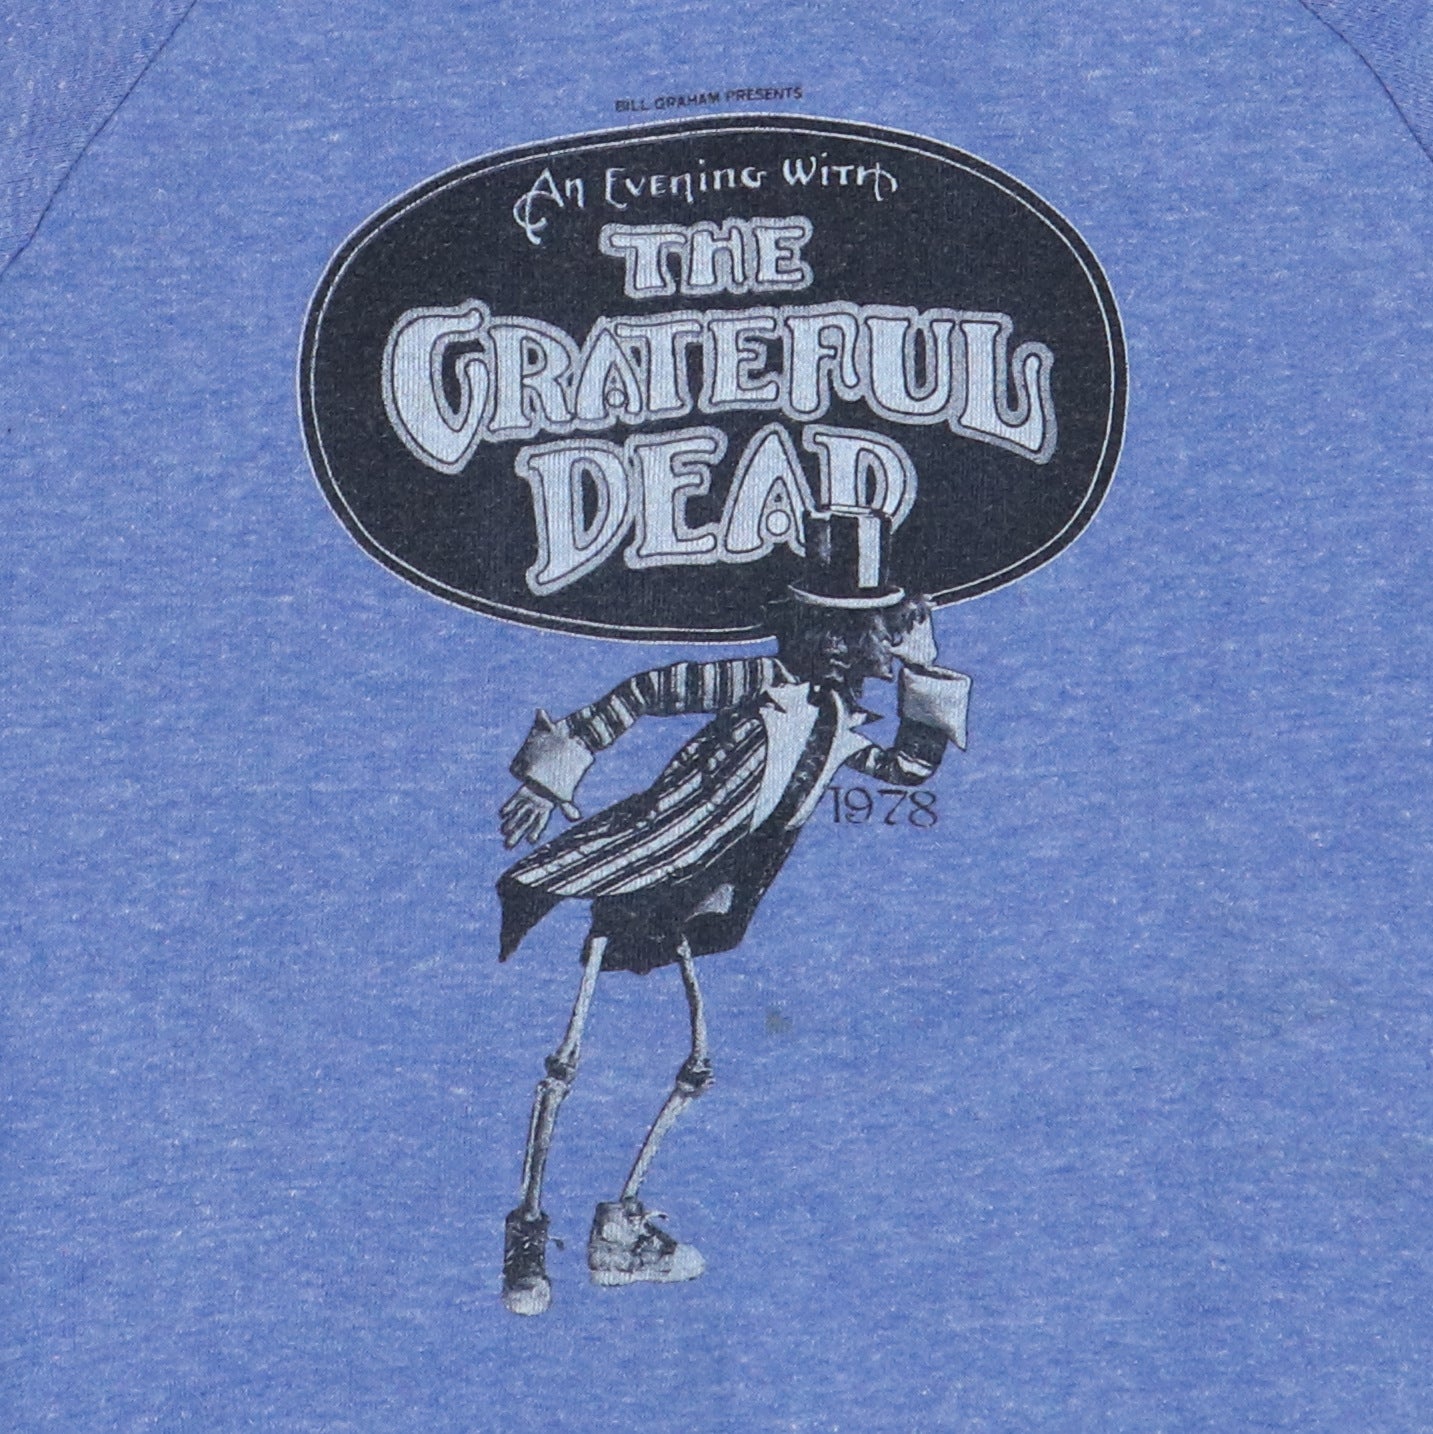 1978 Grateful Dead Concert Jacket